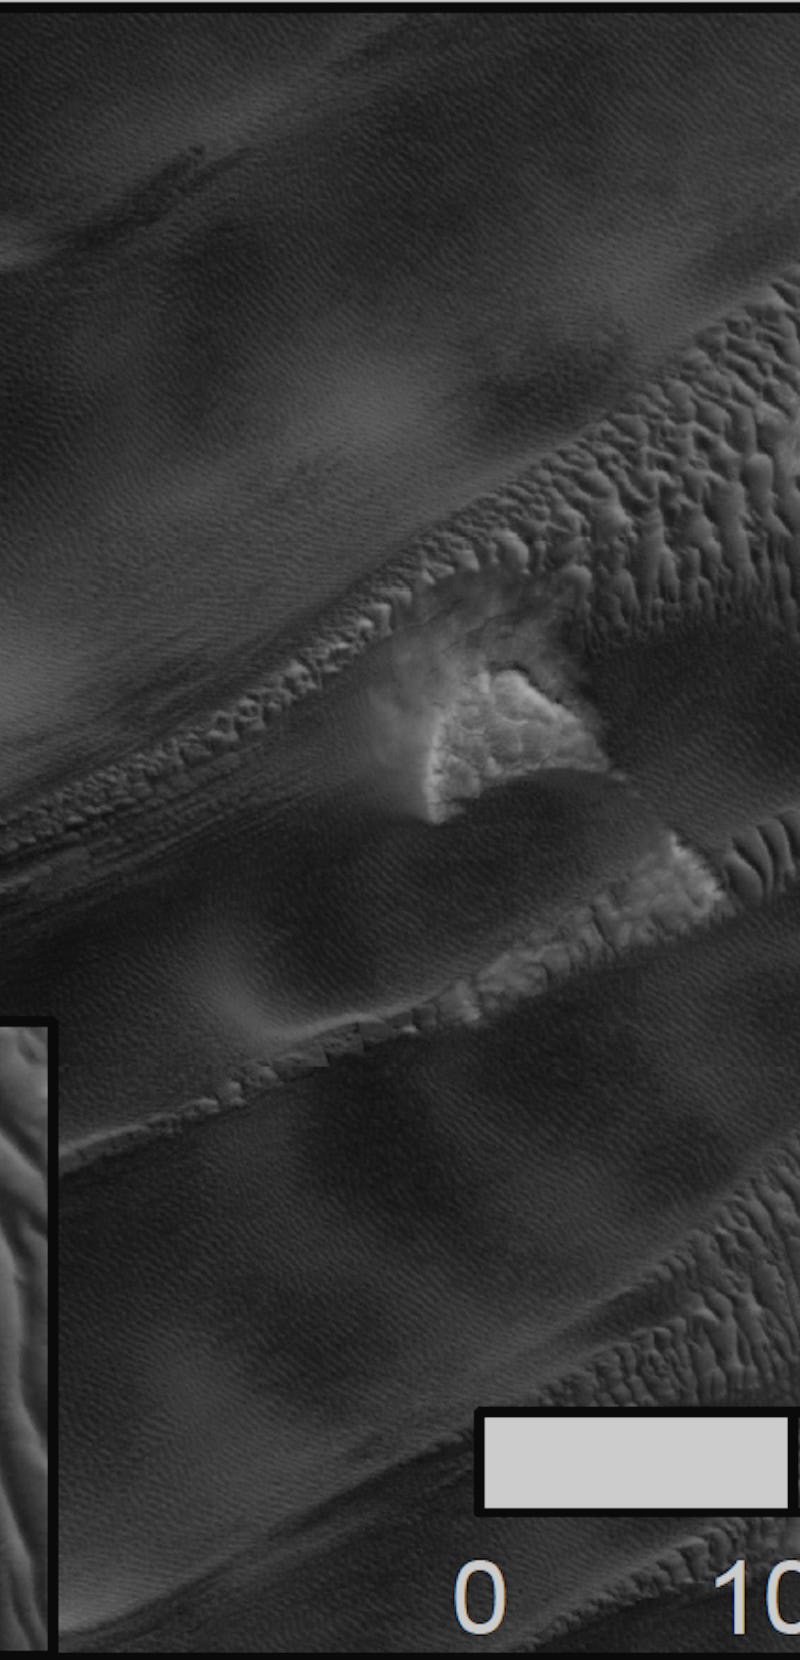 Megaripples on Martian surface